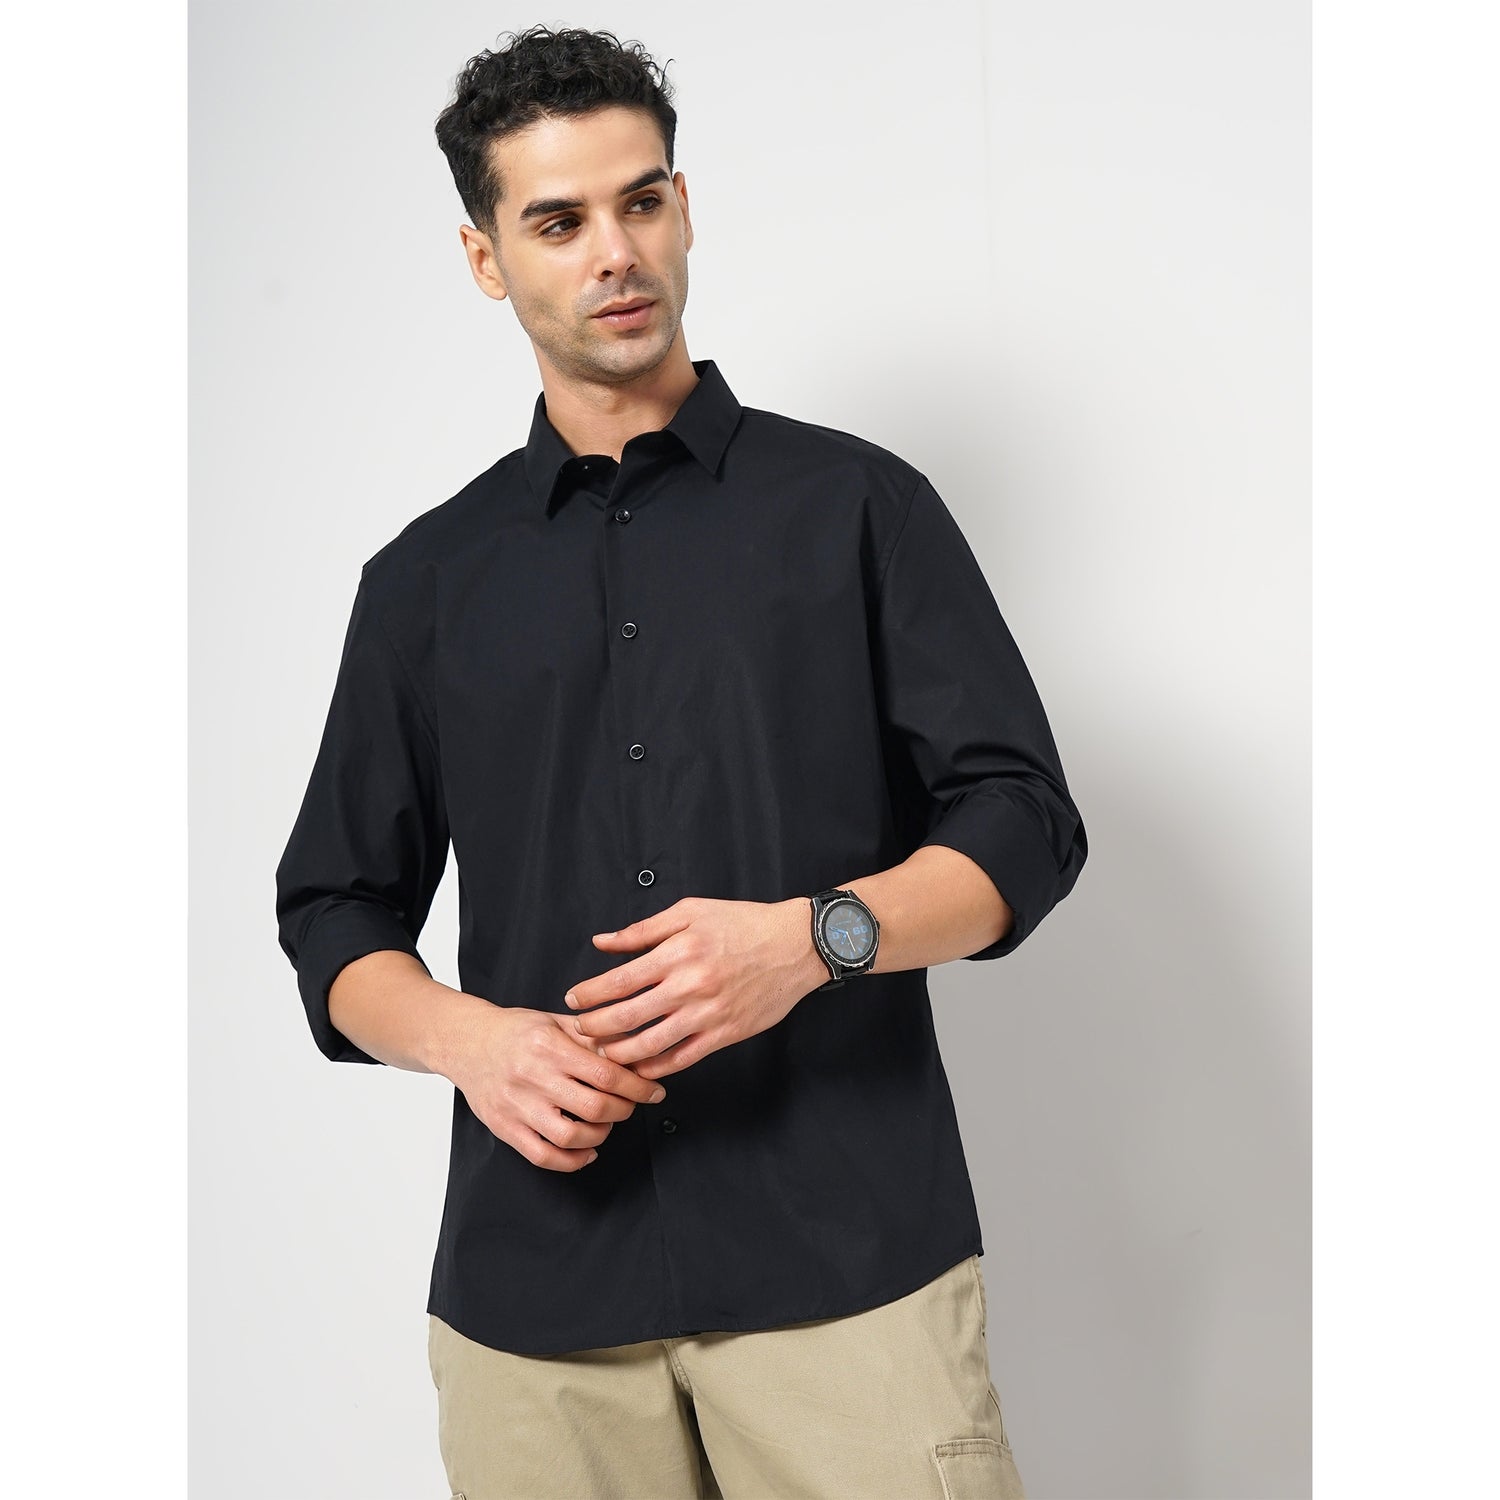 Men's Black Solid Slim Fit Cotton Formal Shirt (RABELLEFR)